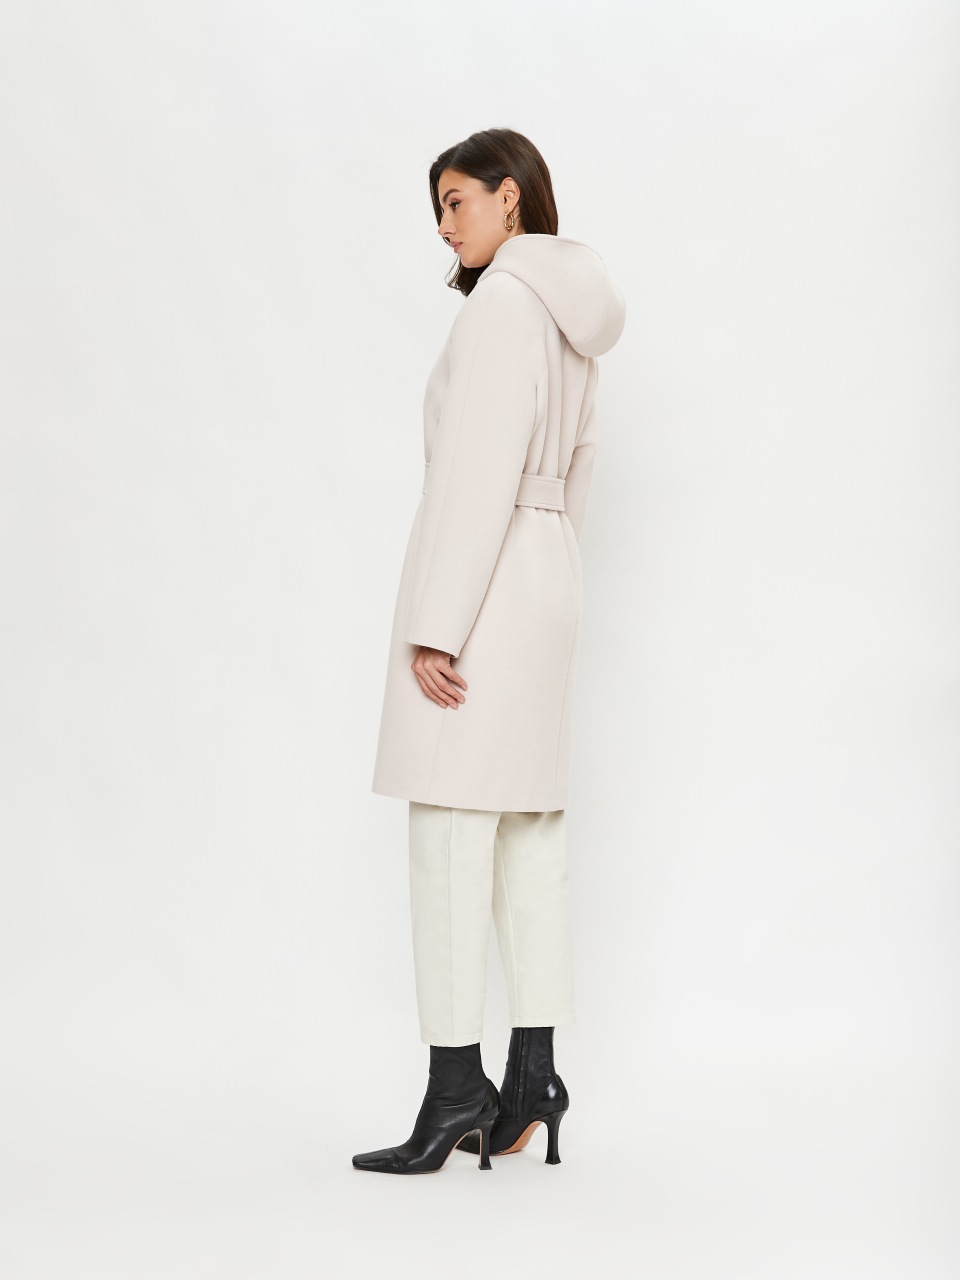 Пальто женское ElectraStyle 4-2103/1-0169 белое 46 RU